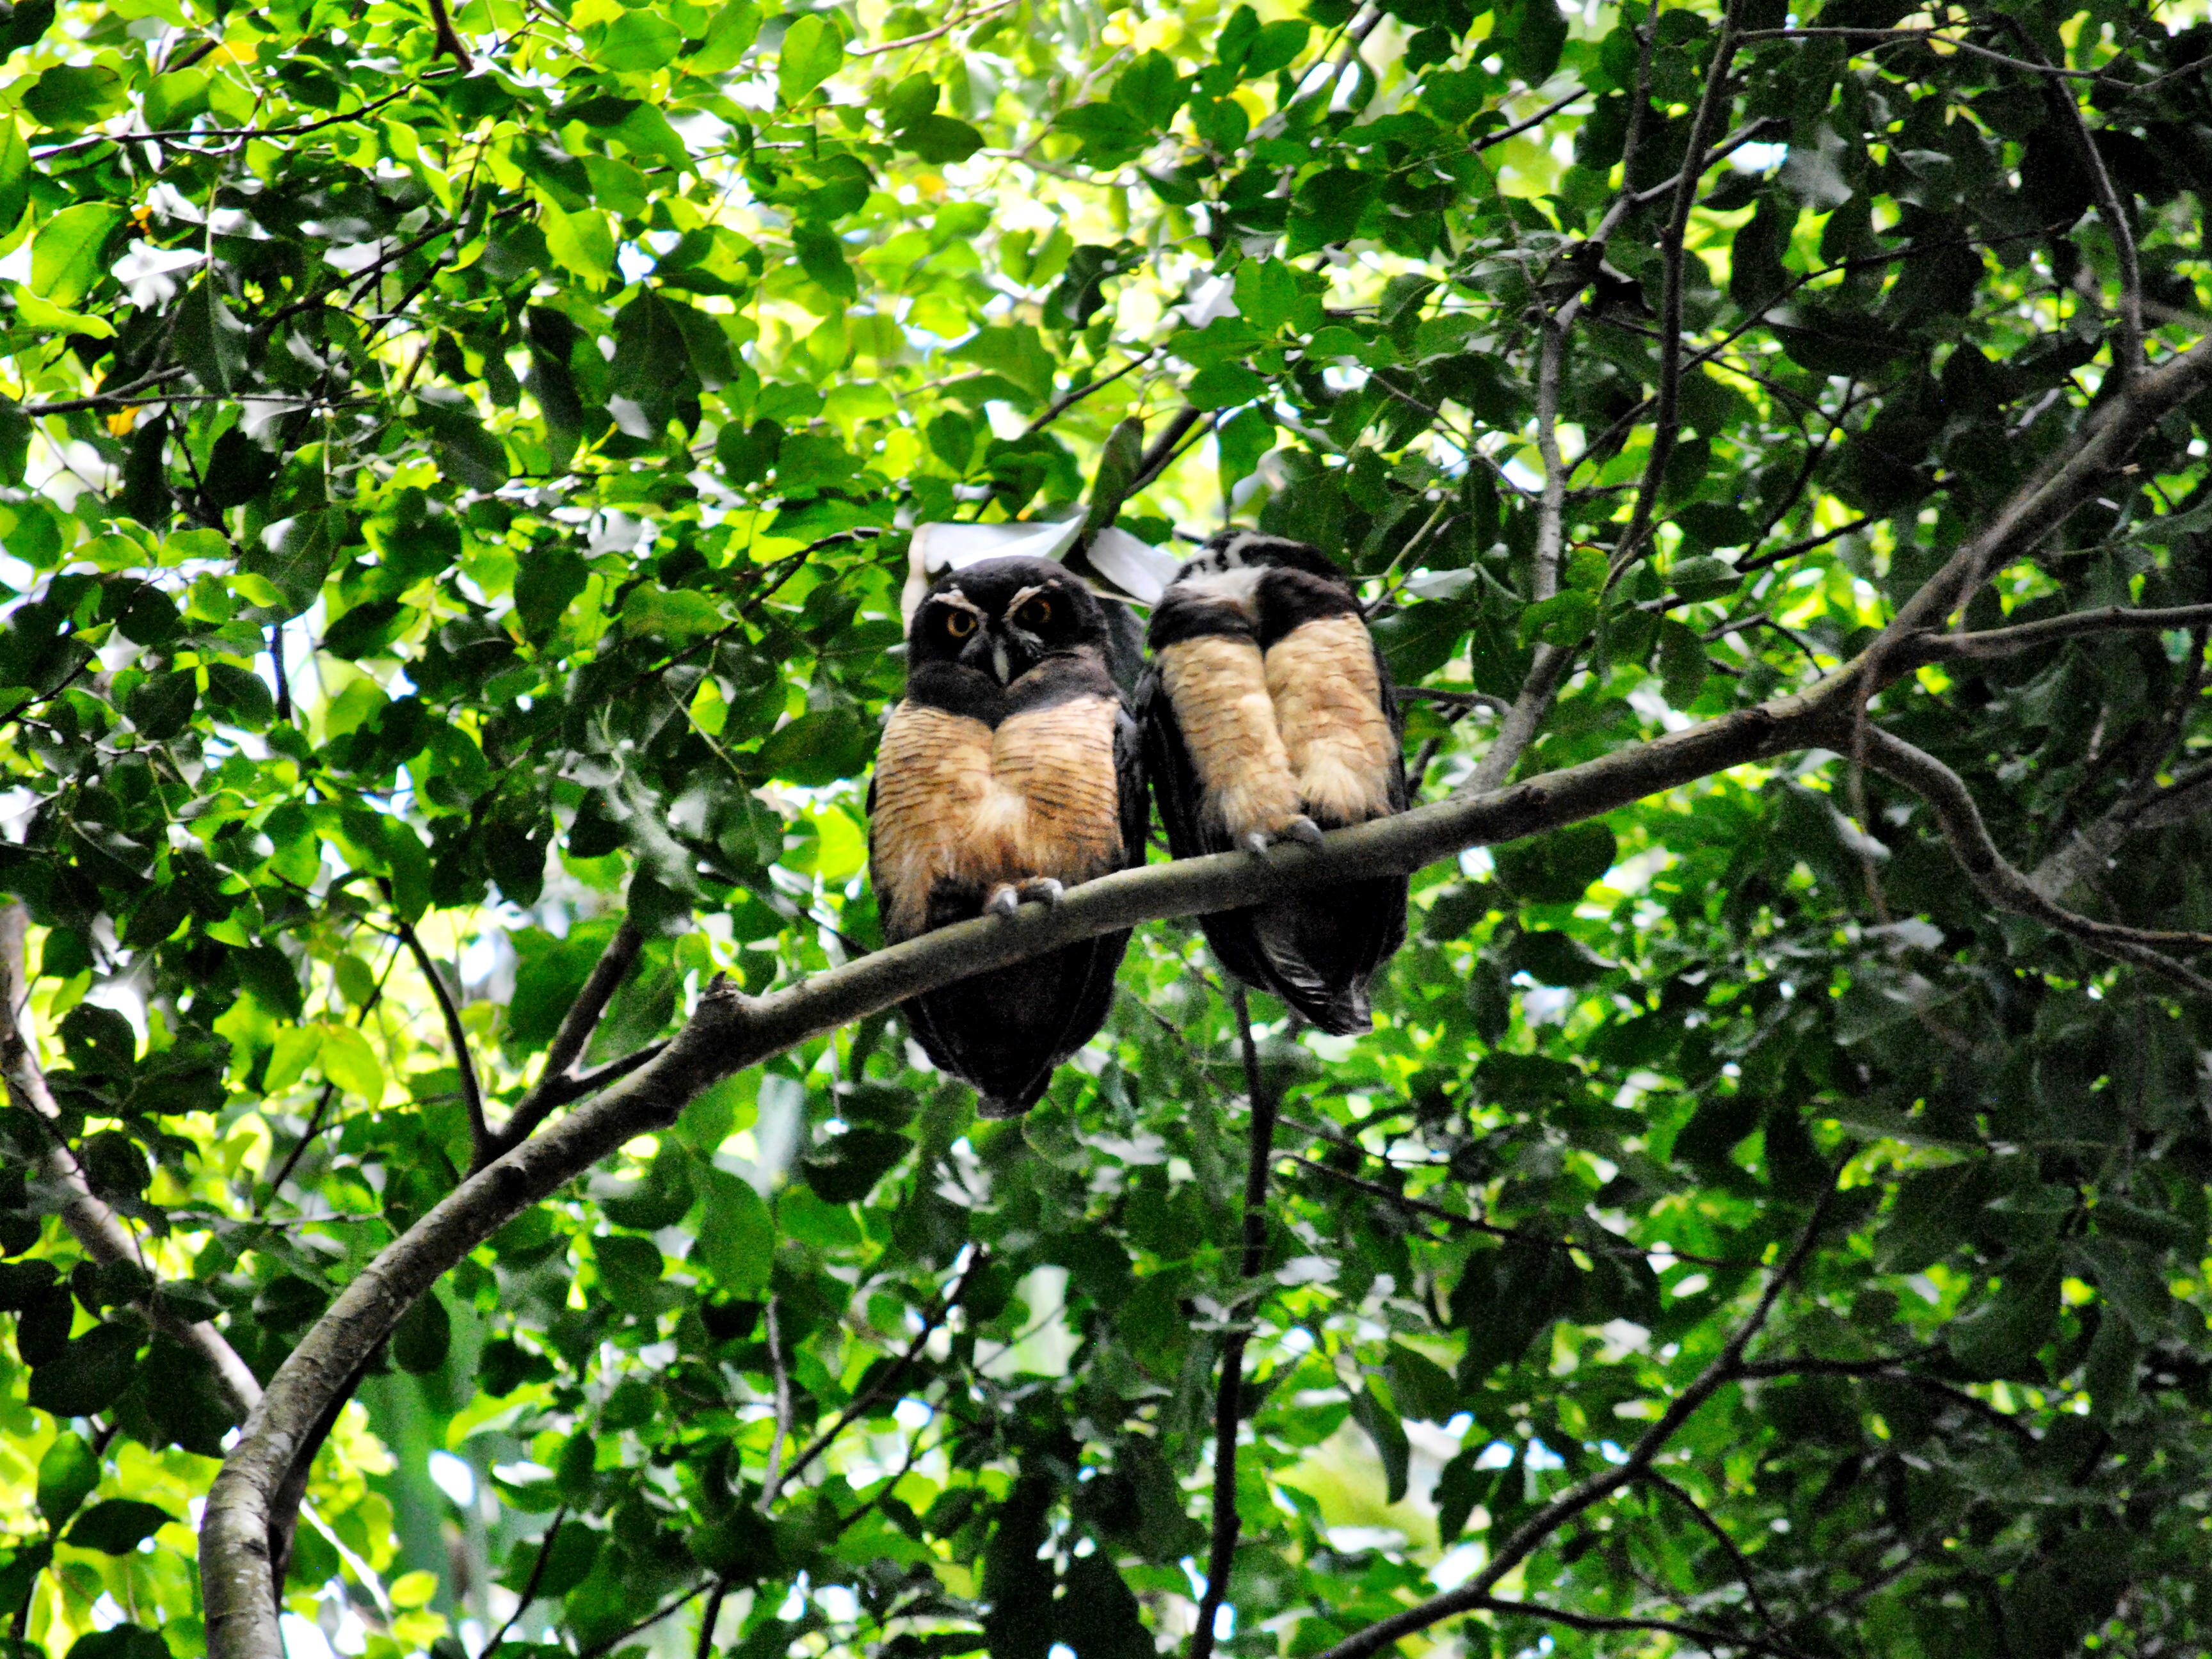 Limón, Costa Rica - Owls